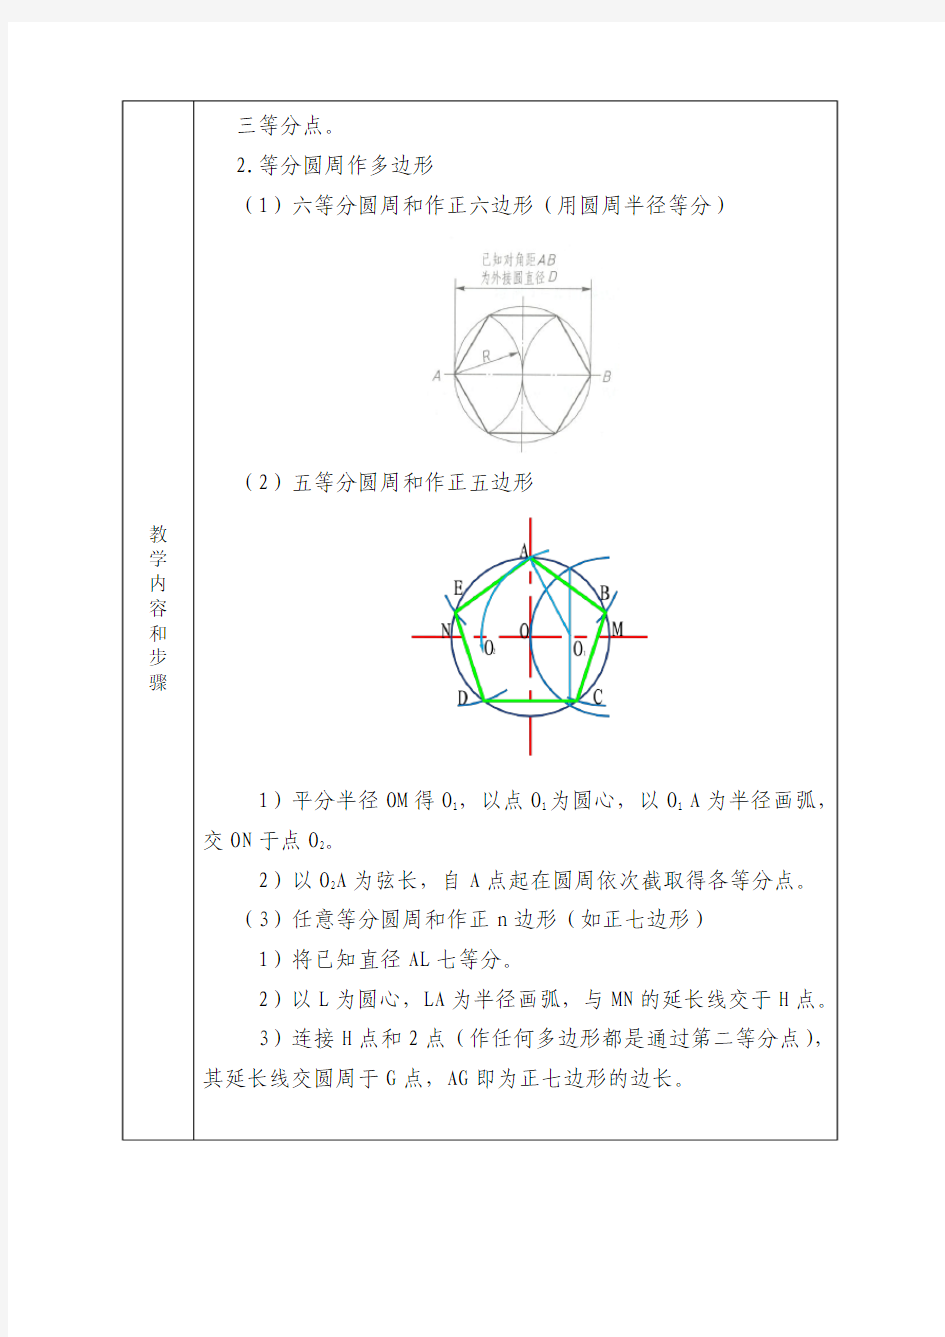 机械制图--第一章   第四节  常见几何图形画法(线段等分、圆的等分画及椭圆的画法)